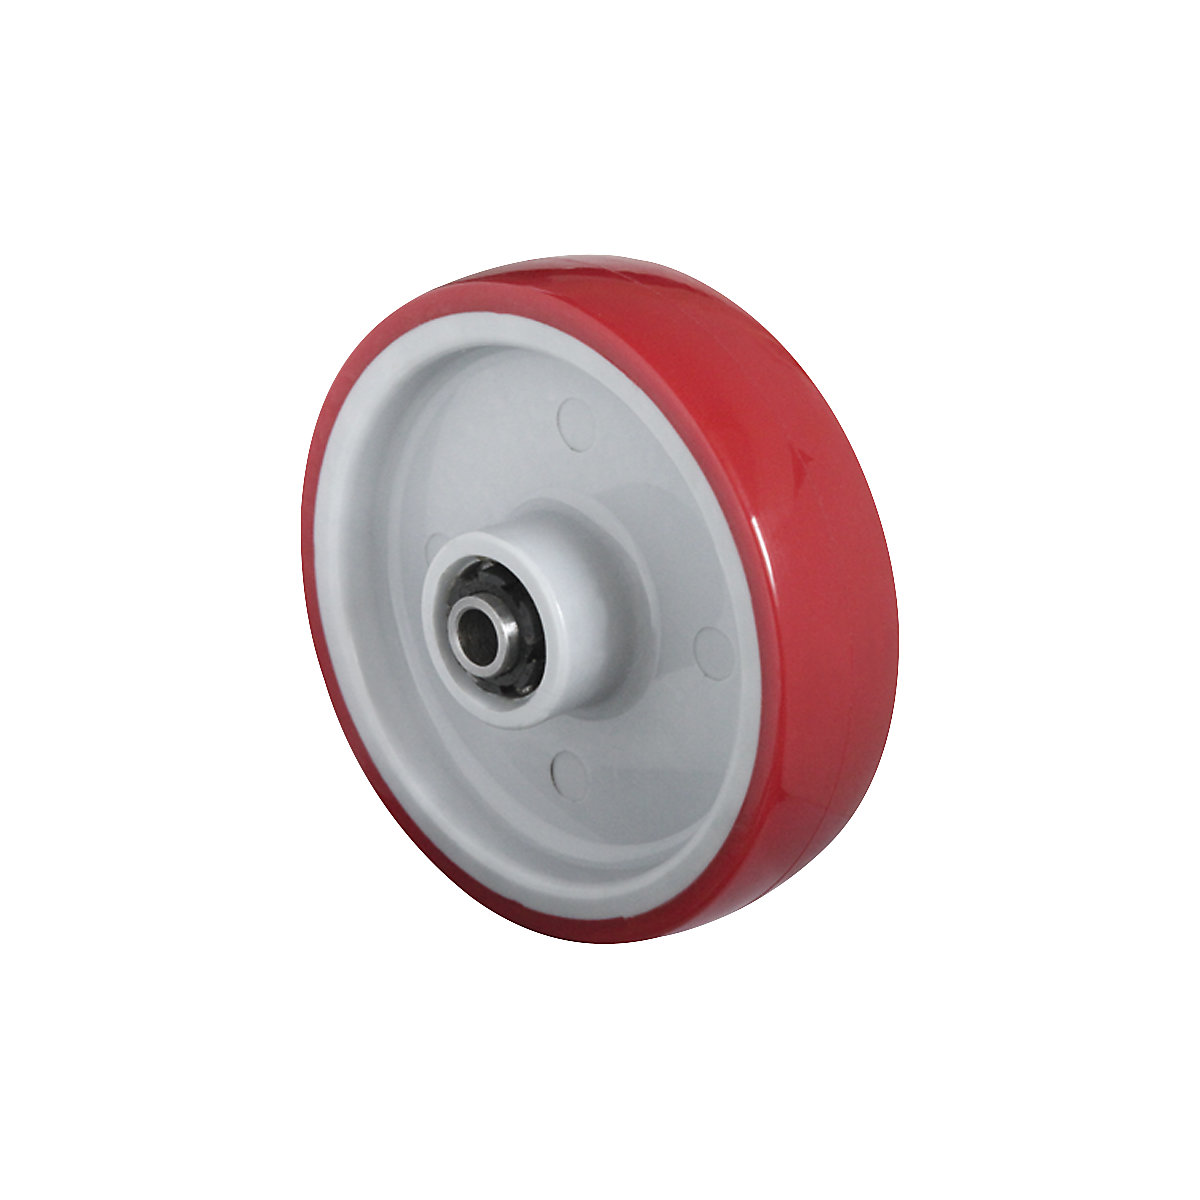 PU kotač, u crvenoj boji, na poliamidnom naplatku, valjkasti ležaj od nehrđajućeg čelika, od 2 kom., Ø x širina kotača 125 x 32 mm-1